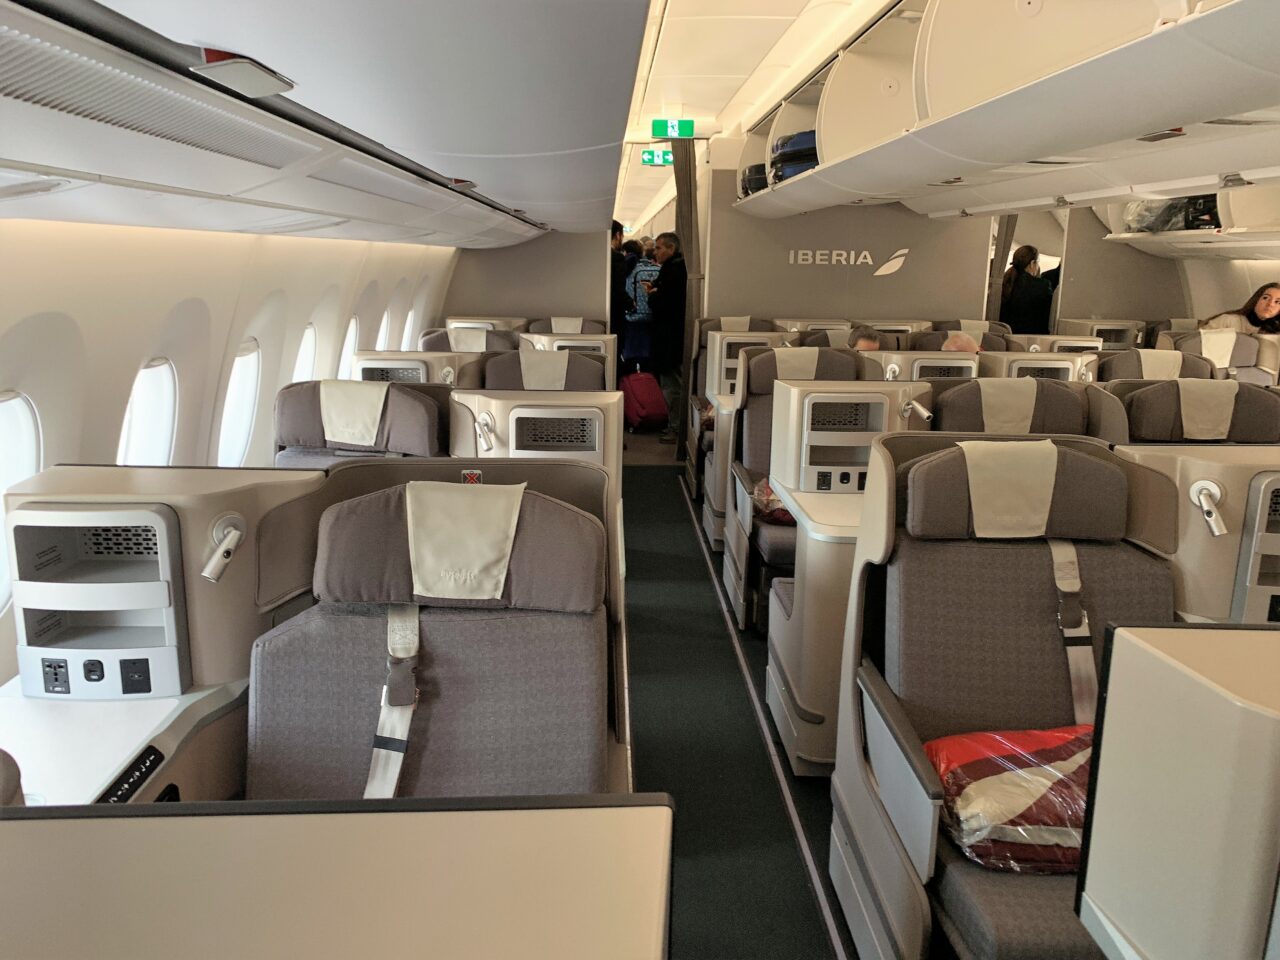 Iberia A350 business class cabin